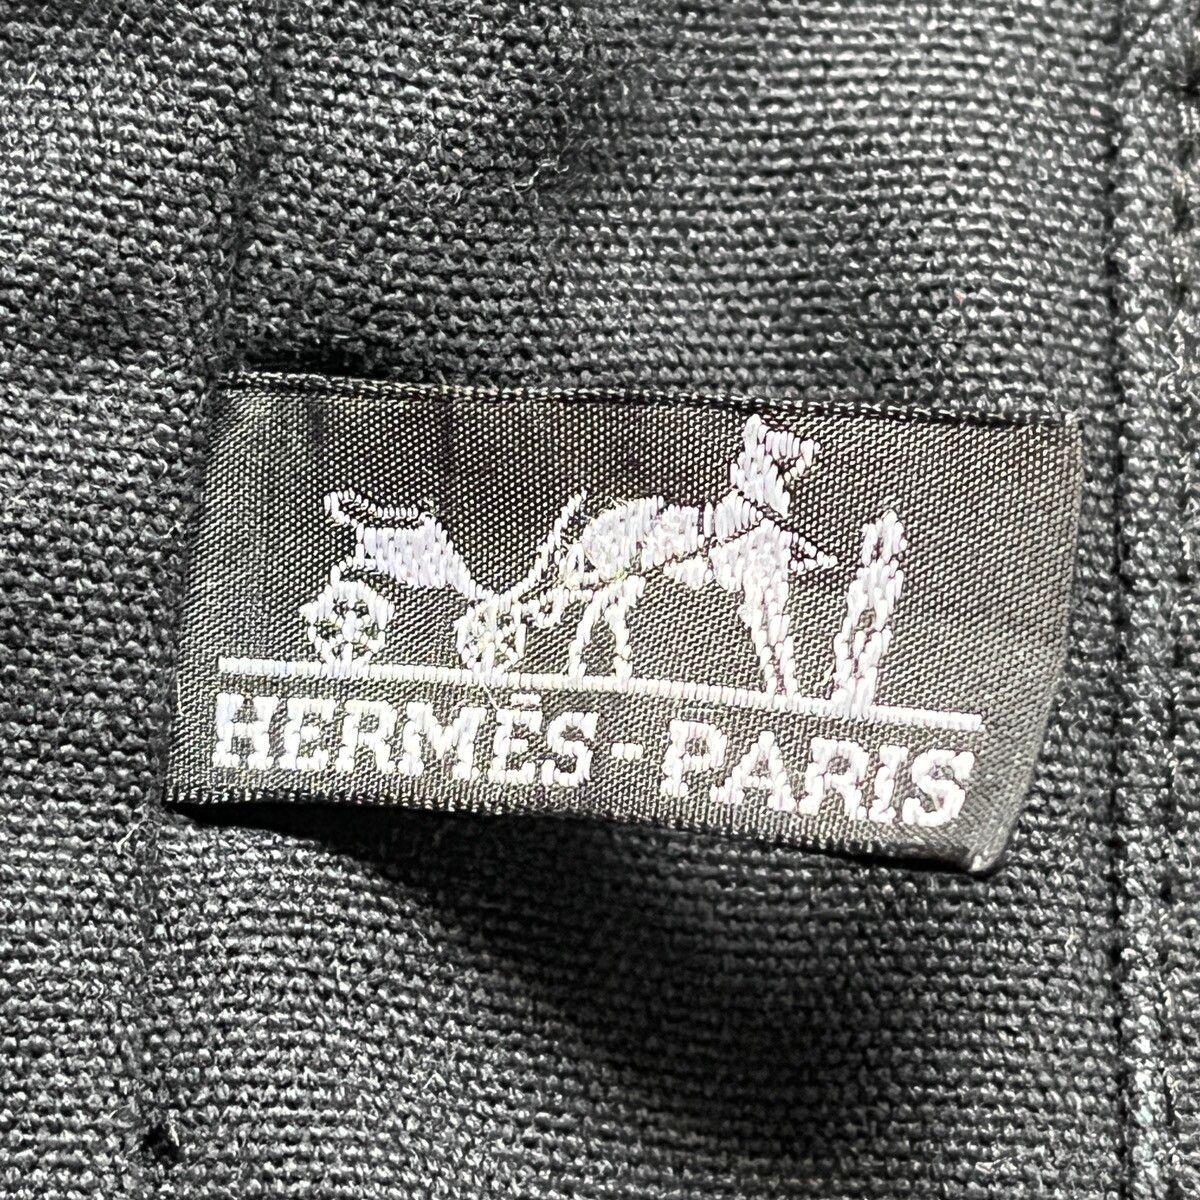 Hermes Birkin Tote Bag Waterproof - 18